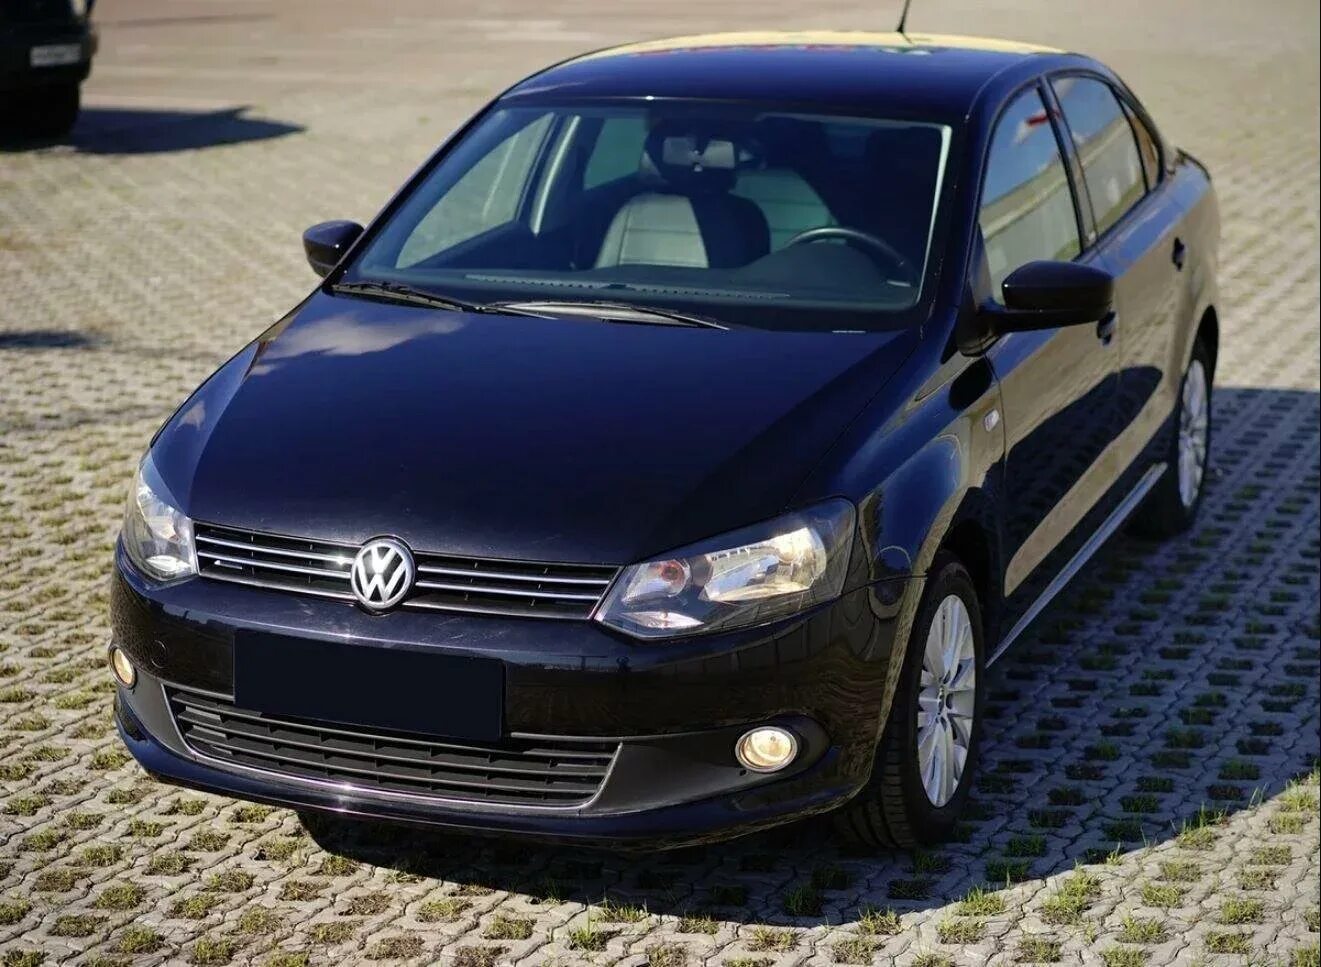 Купить новый поло цена. Фольксваген поло 5. Volkswagen Polo sedan 2015. Фольксваген поло 5 седан. Фольксваген поло 2015 черный.